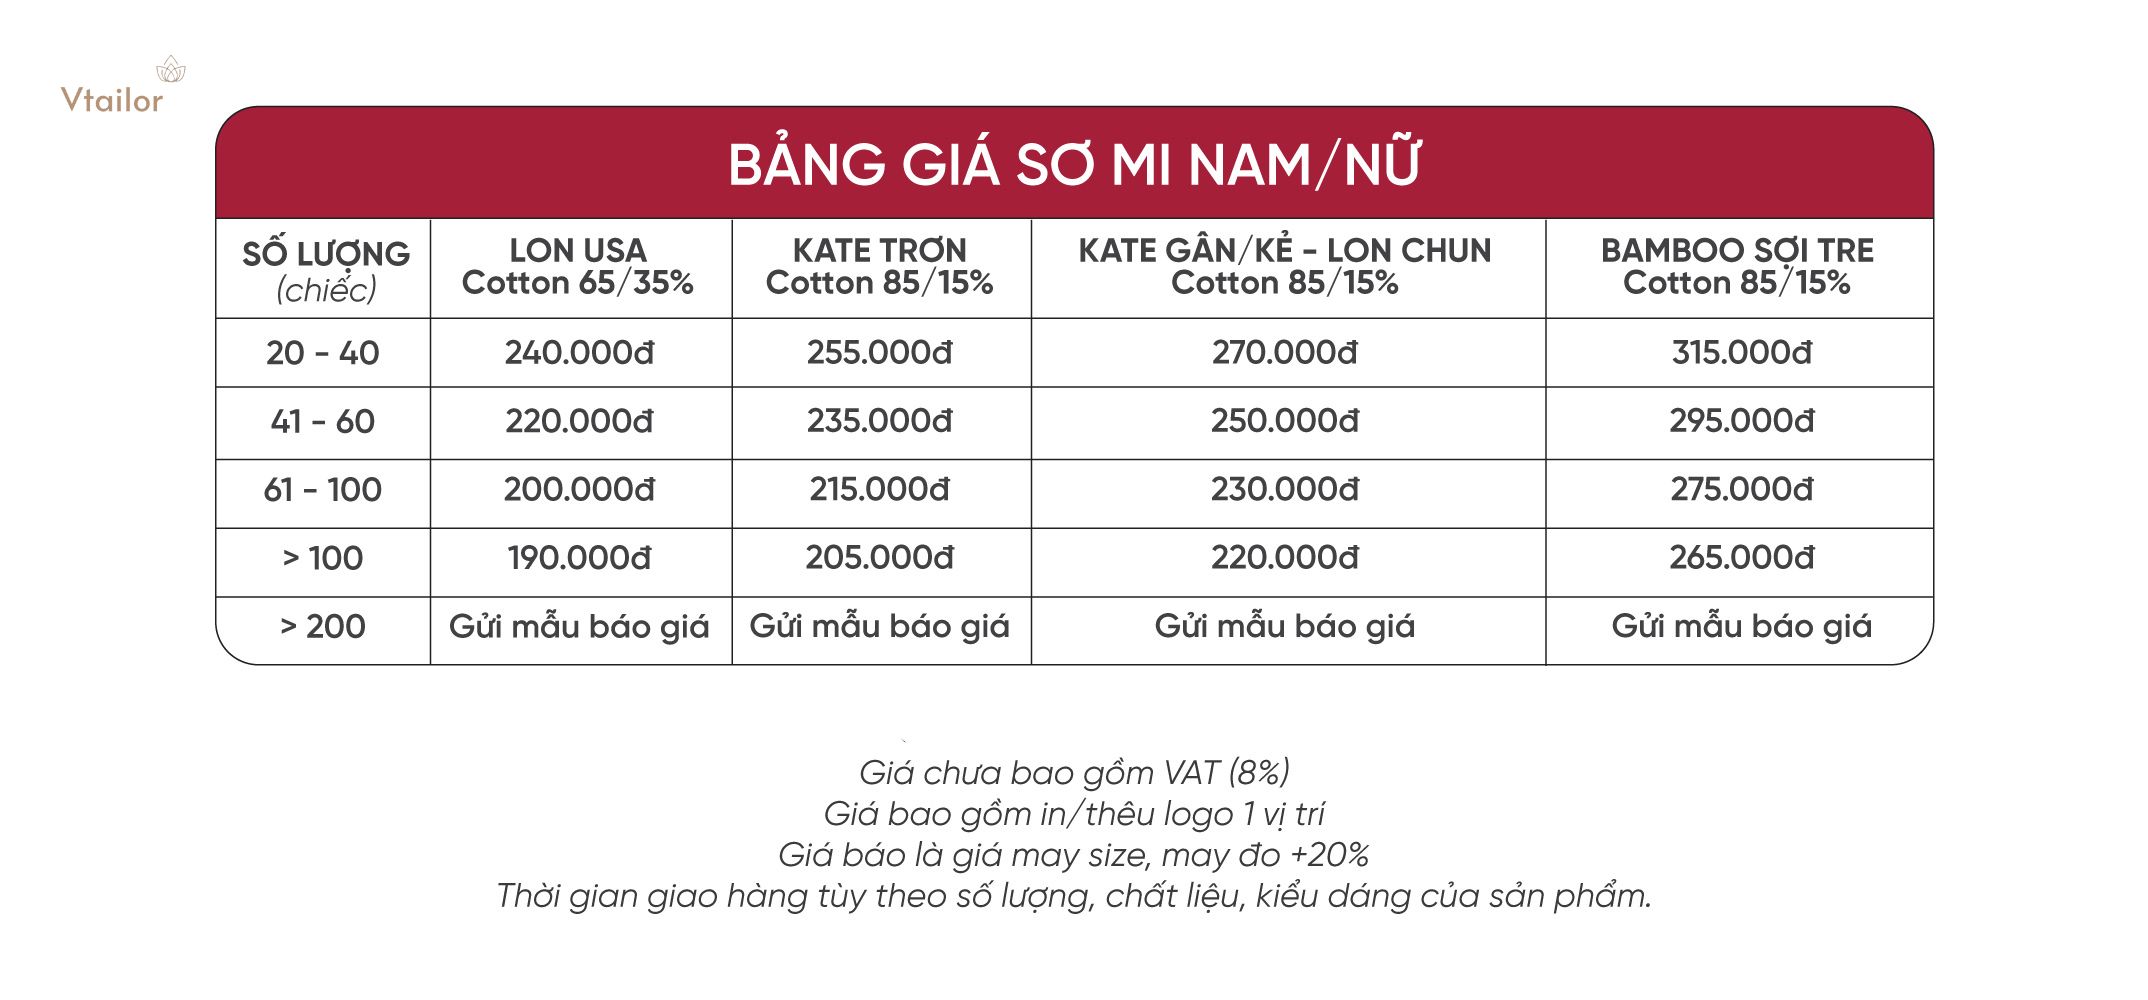 Bang-gia-may-do-so-mi-dong-phuc-000